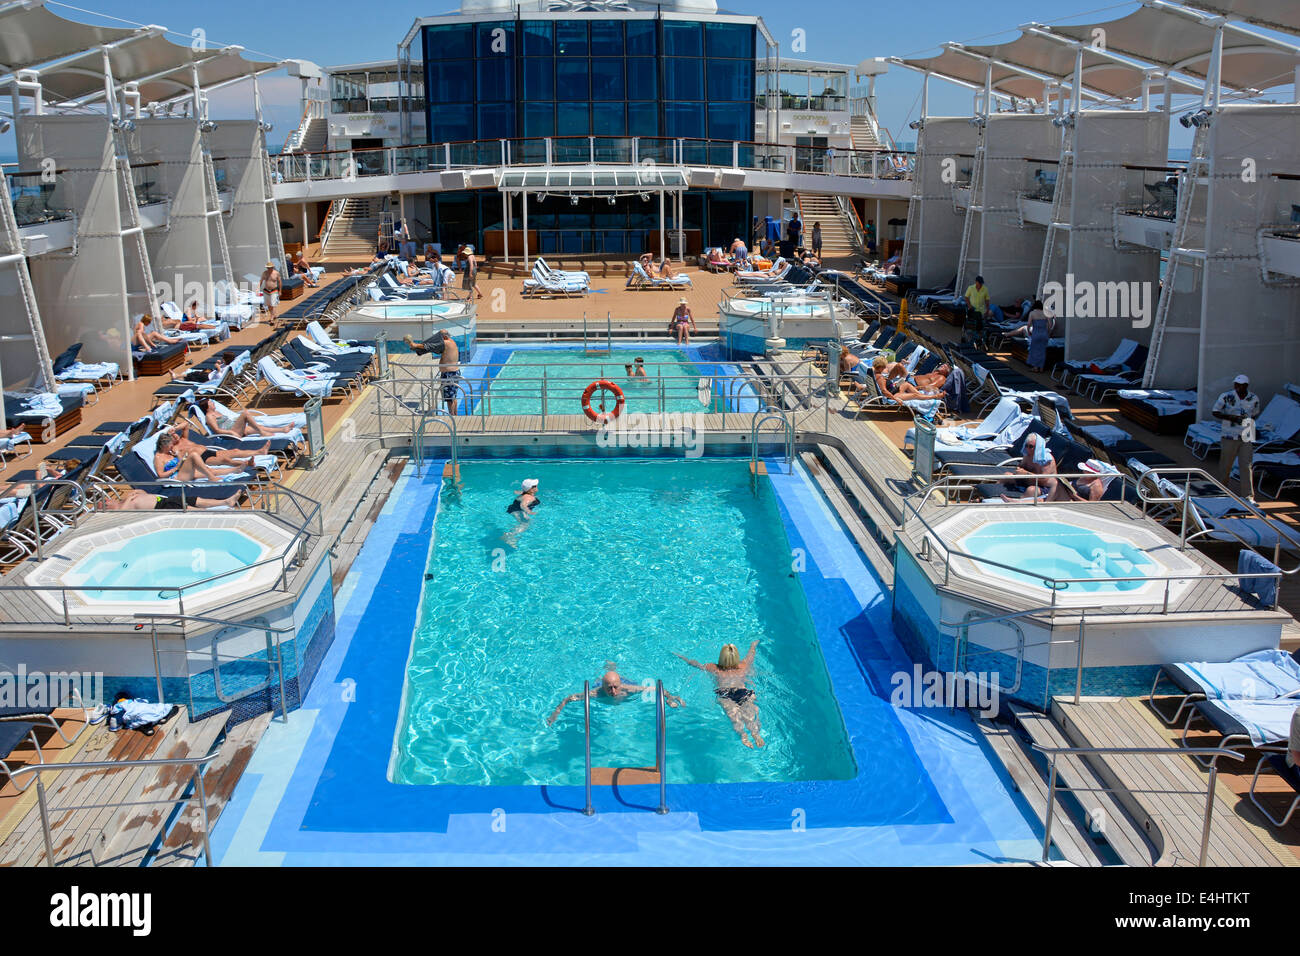 Les gens en ocean liner de croisière navire natation dans la piscine et vous détendre sur des chaises longues pour bronzer sur la côte adriatique de l'Italie Europe Banque D'Images